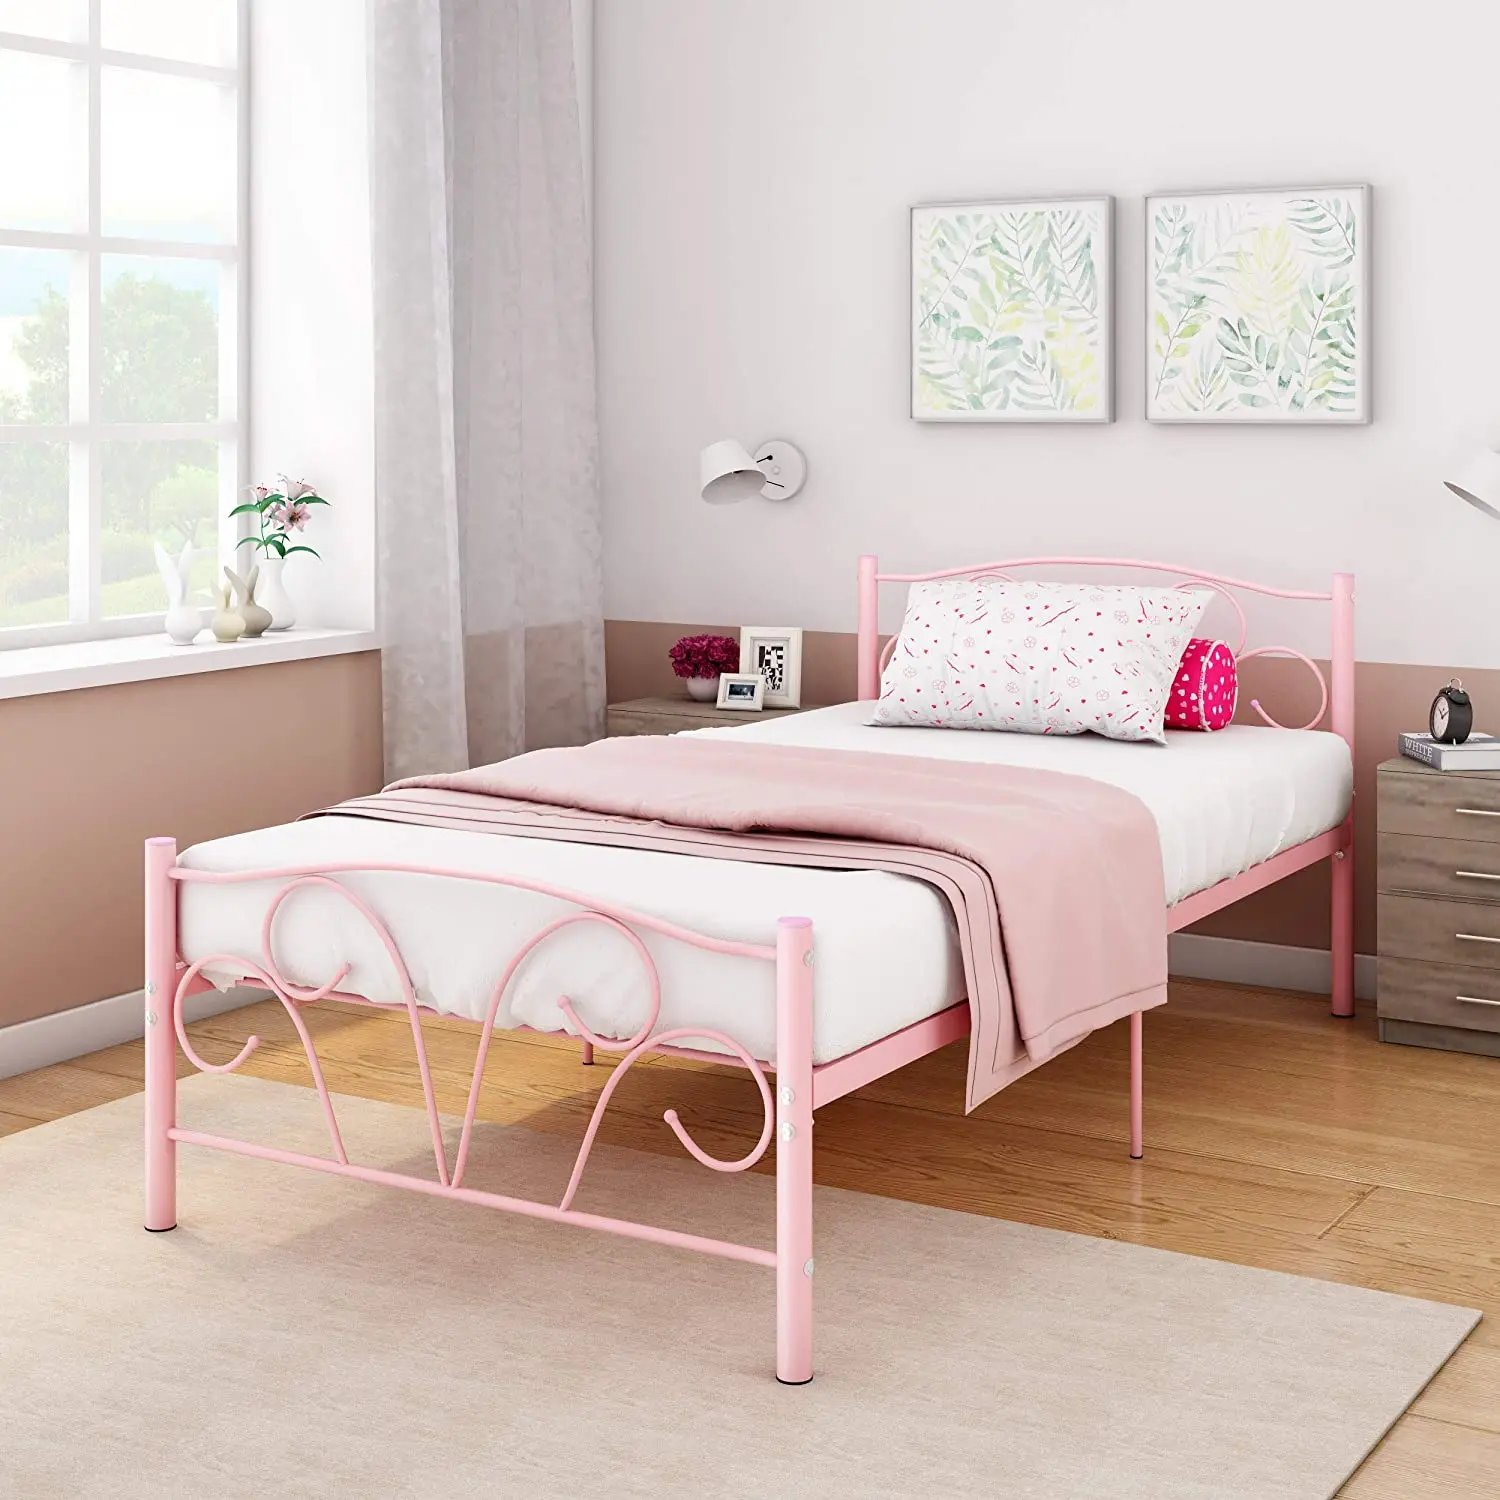 3FT Single Modern White Metal Bed Frame for Adult Children Bedroom Furniture 